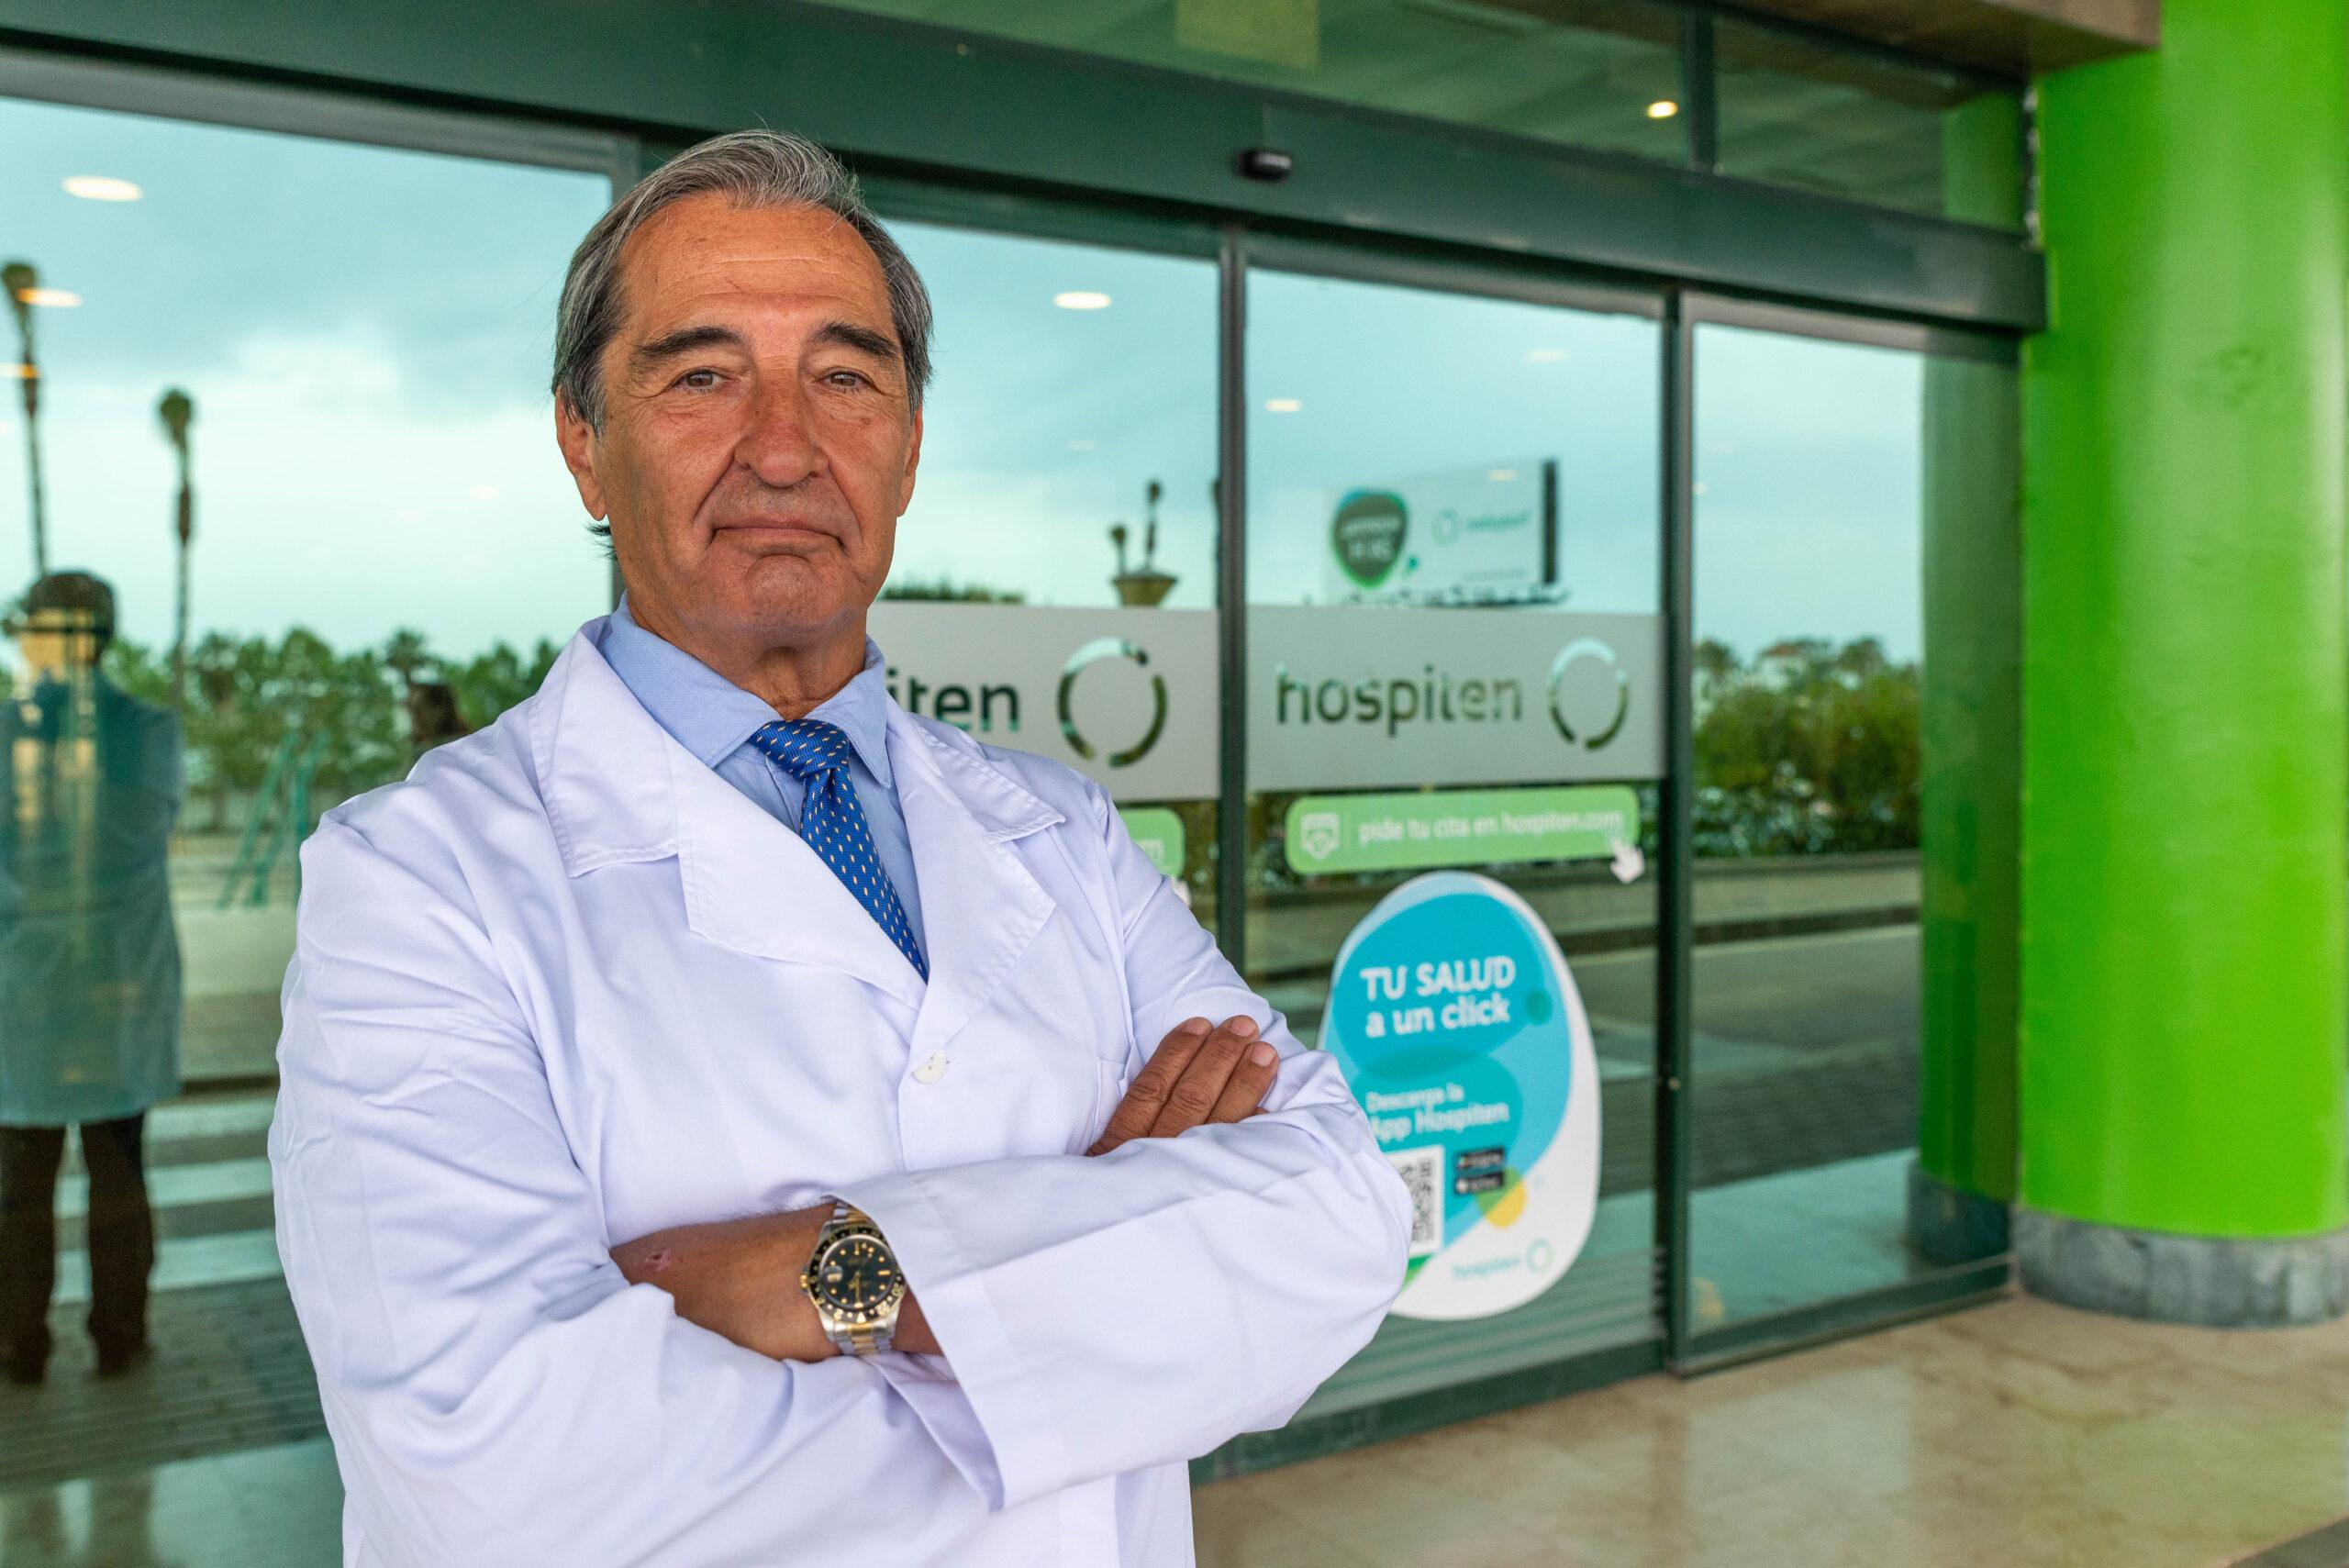 “La cirugía bariátrica no es algo estético, sino que trata una enfermedad, la de la obesidad” Dr. José Luis Gallego Perales